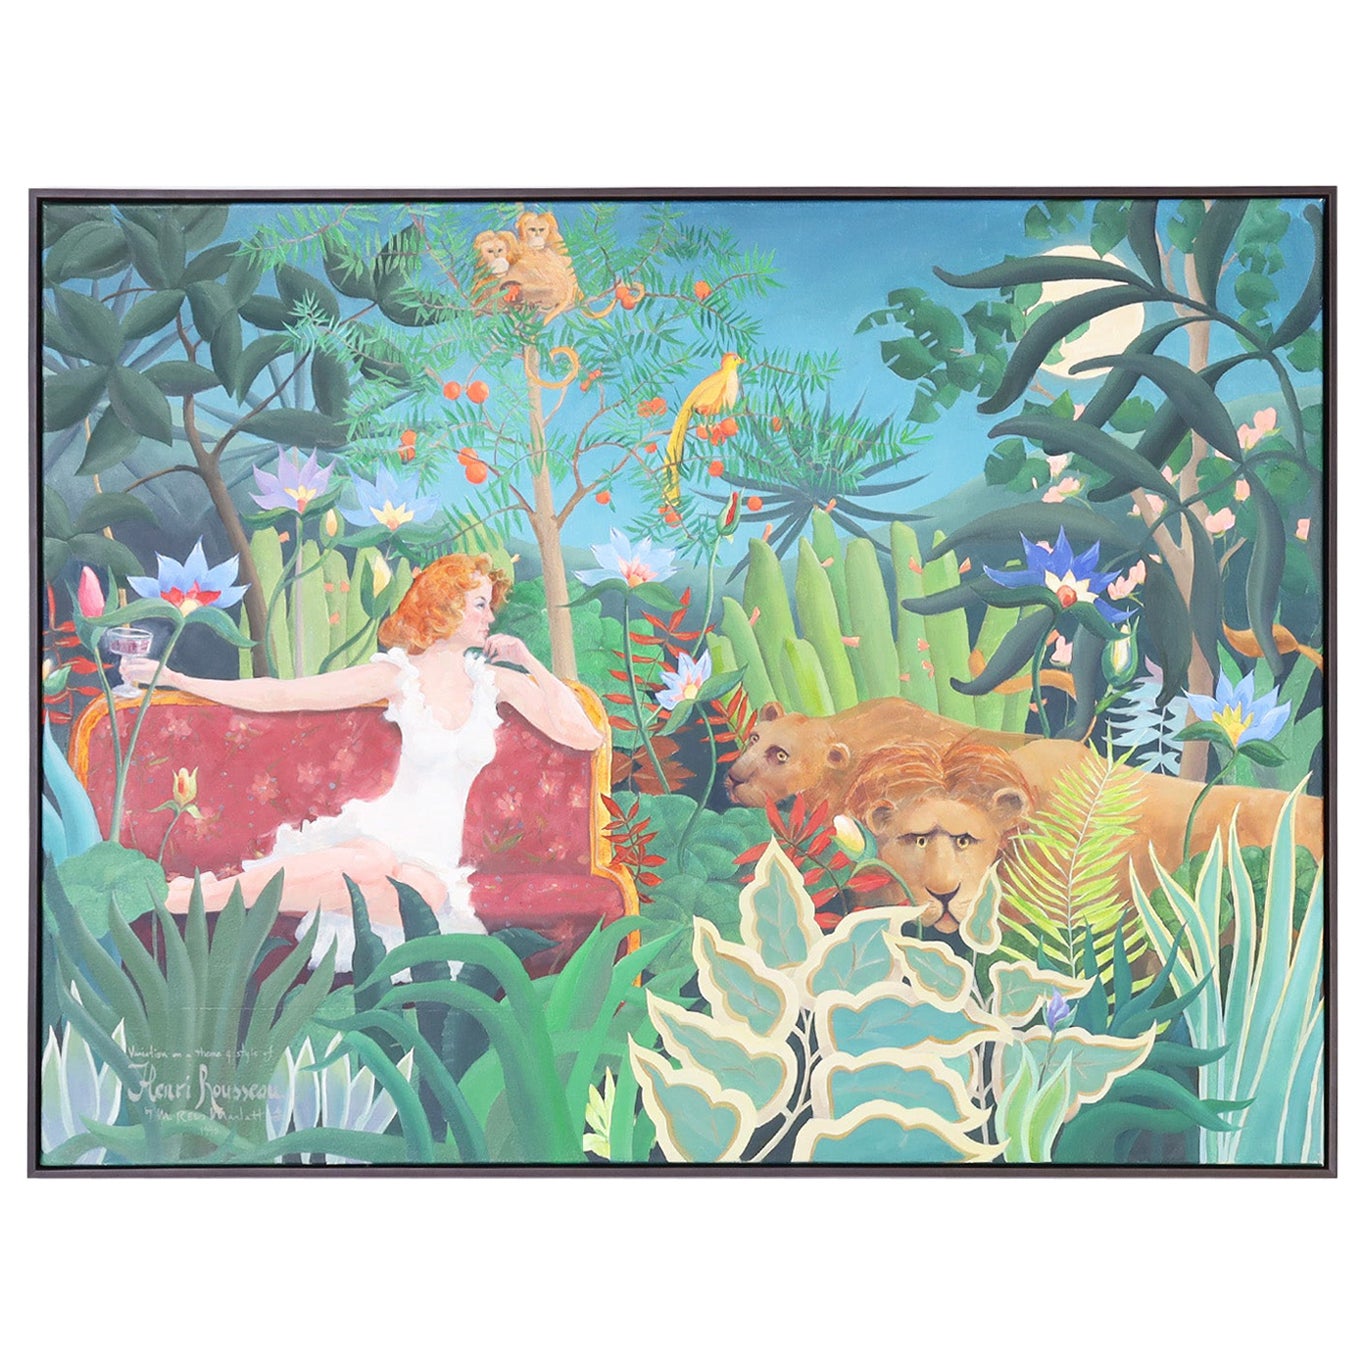 Peinture sur toile d'un Jungle avec des chats, des singes et une femme